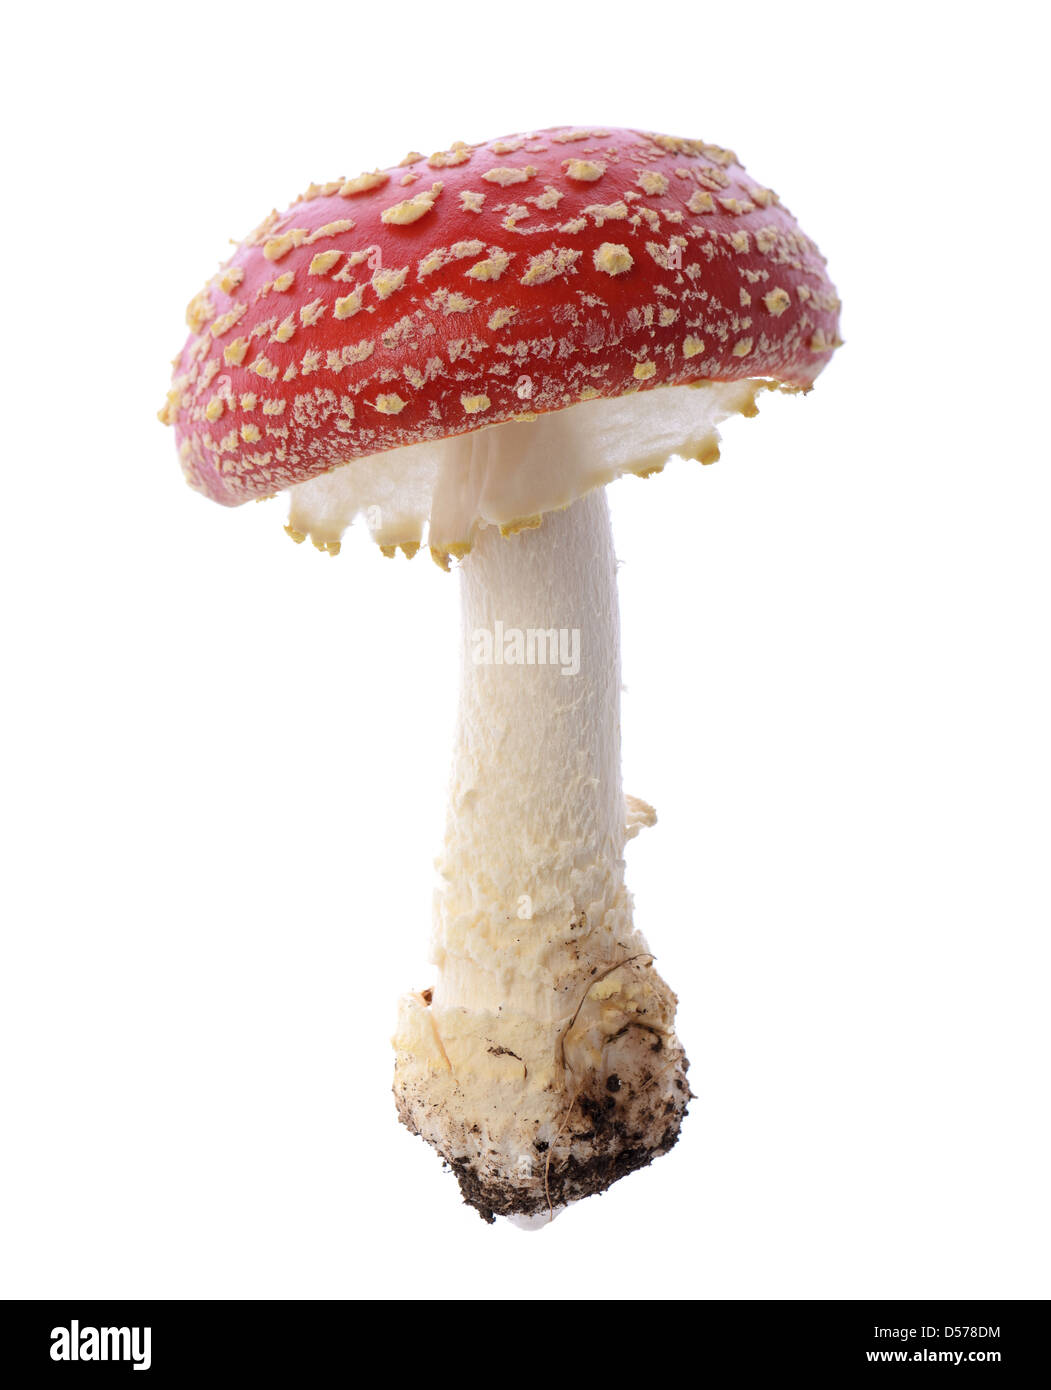 Rosso a fungo di veleno toadstool close up studio shoot Foto Stock